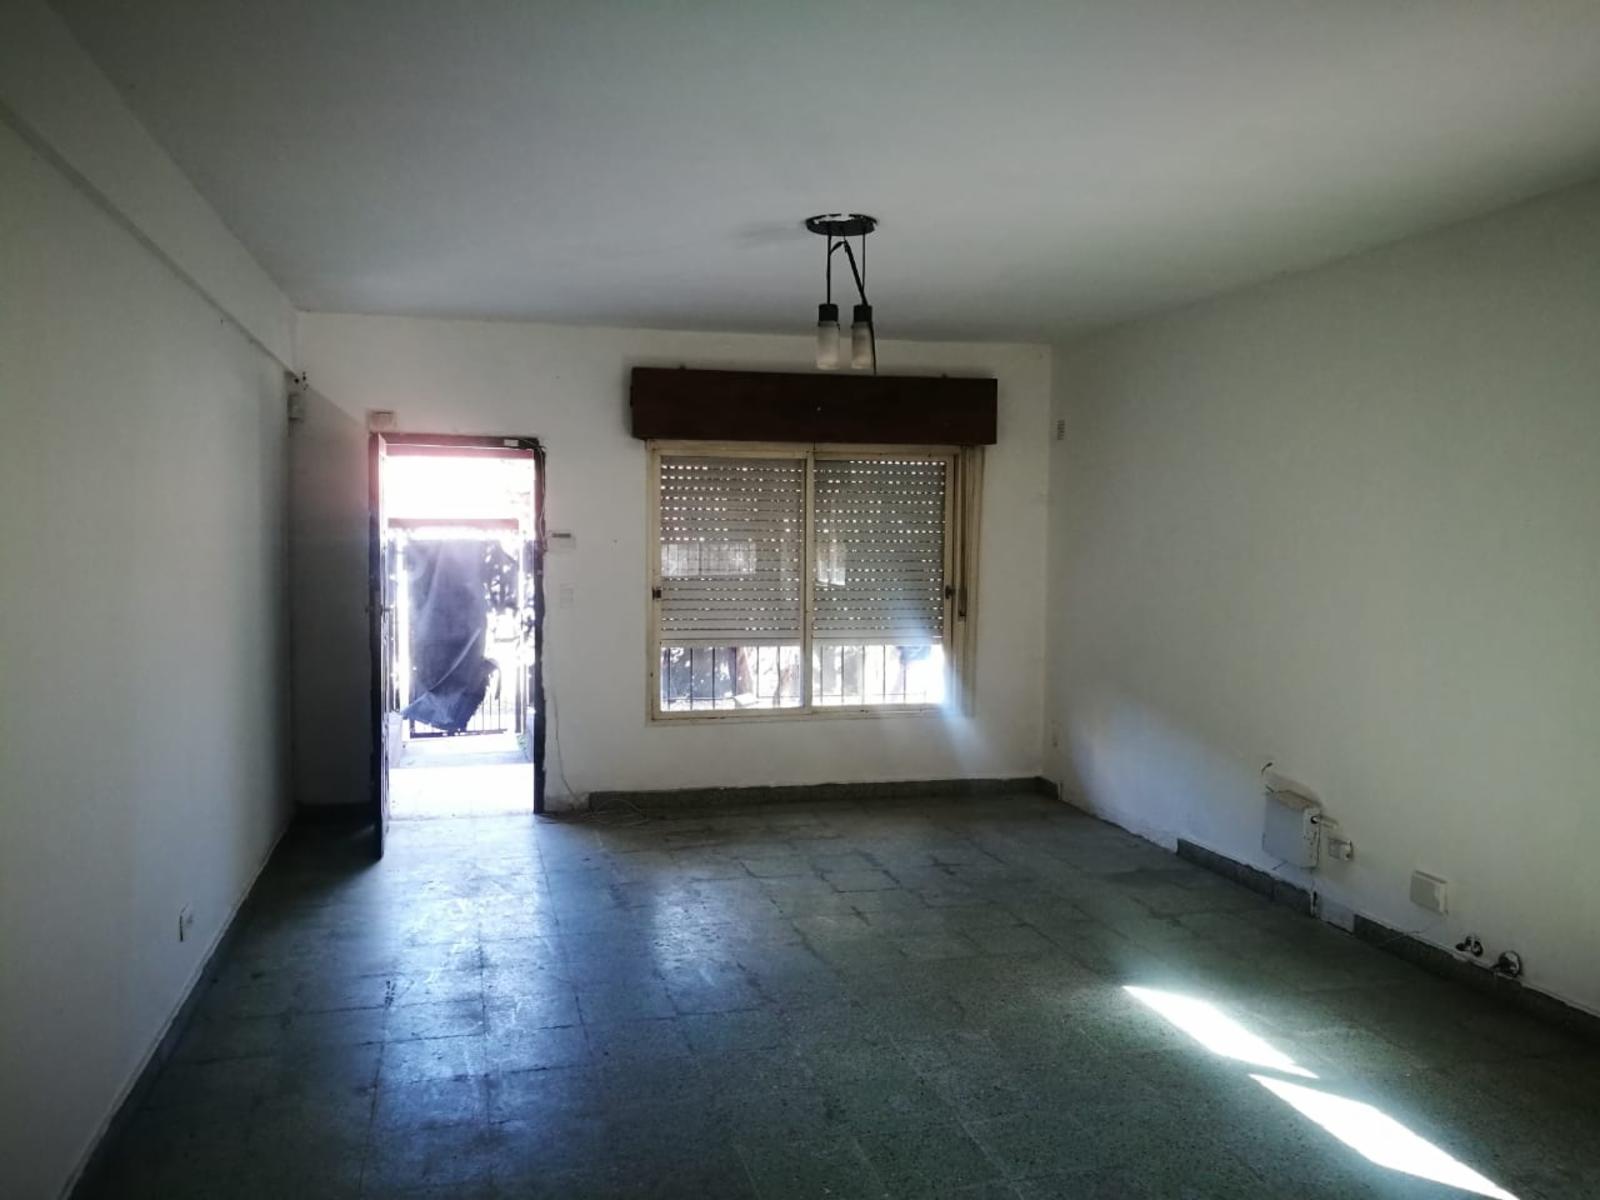 Vendo casa en Paso del Rey con habitación de paredes acusticas para sala de ensayo o estudio de grab